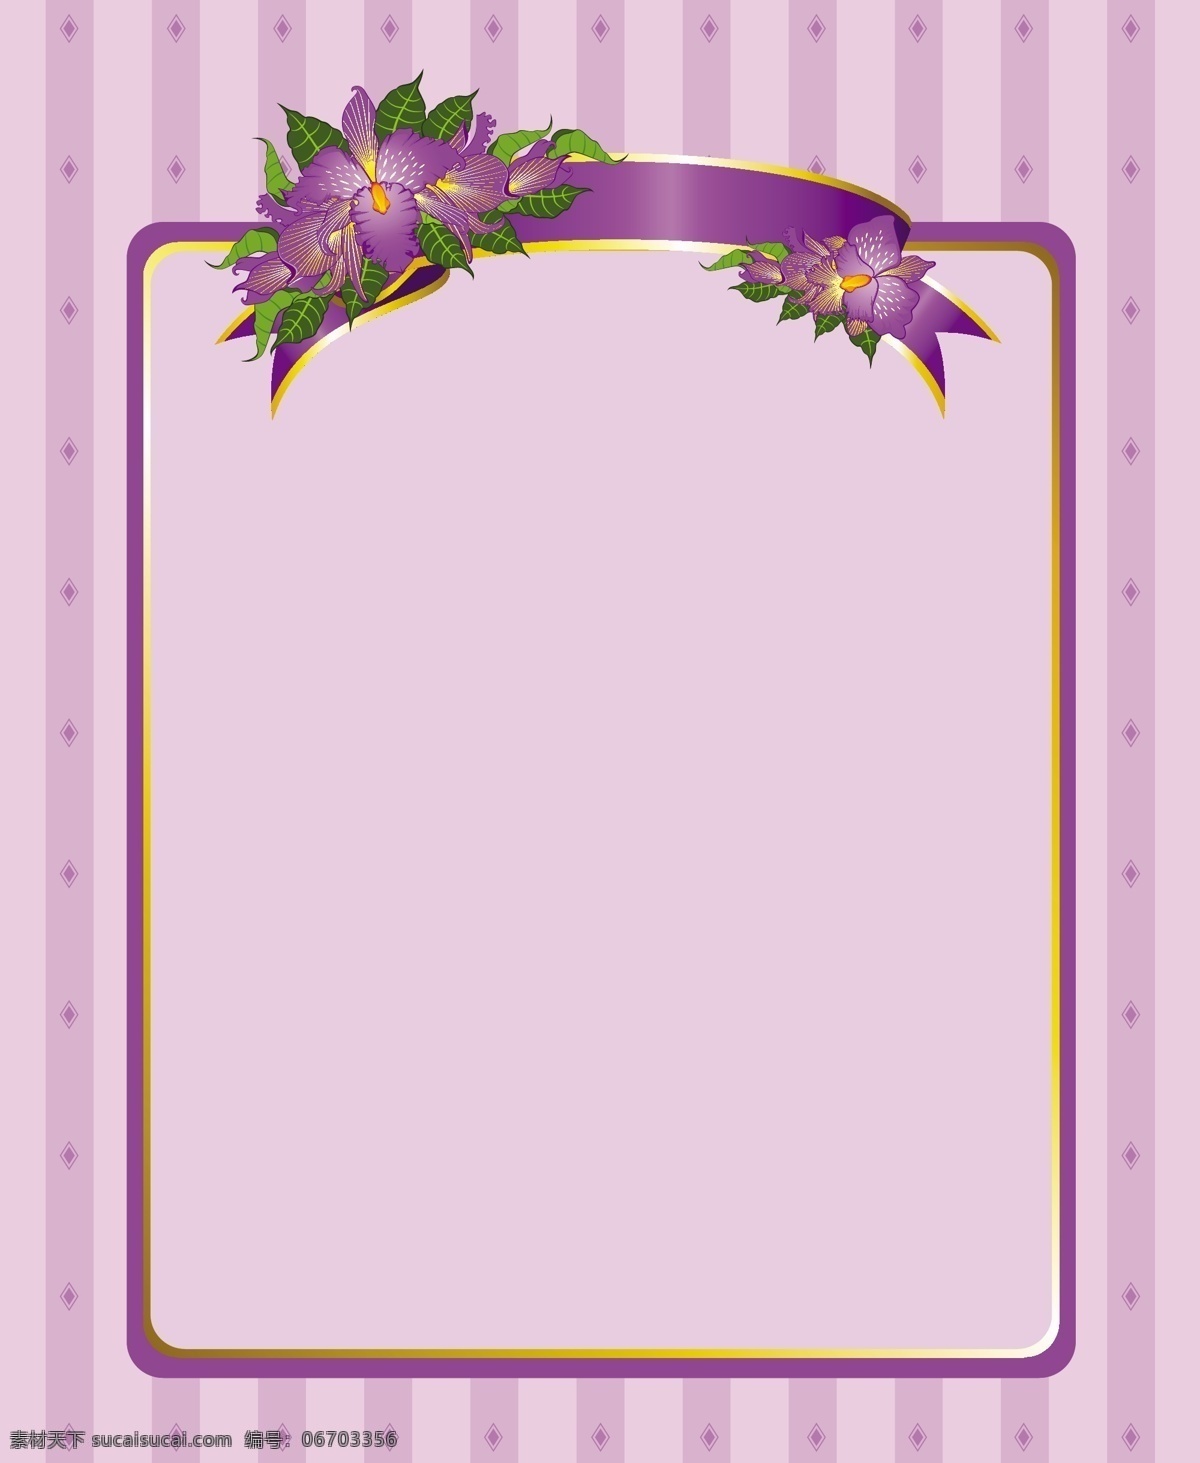 矢量 紫罗兰 色调 装饰 边框 架 花卉边框 鲜花相框 紫色边框 紫罗兰色调 矢量图 花纹花边